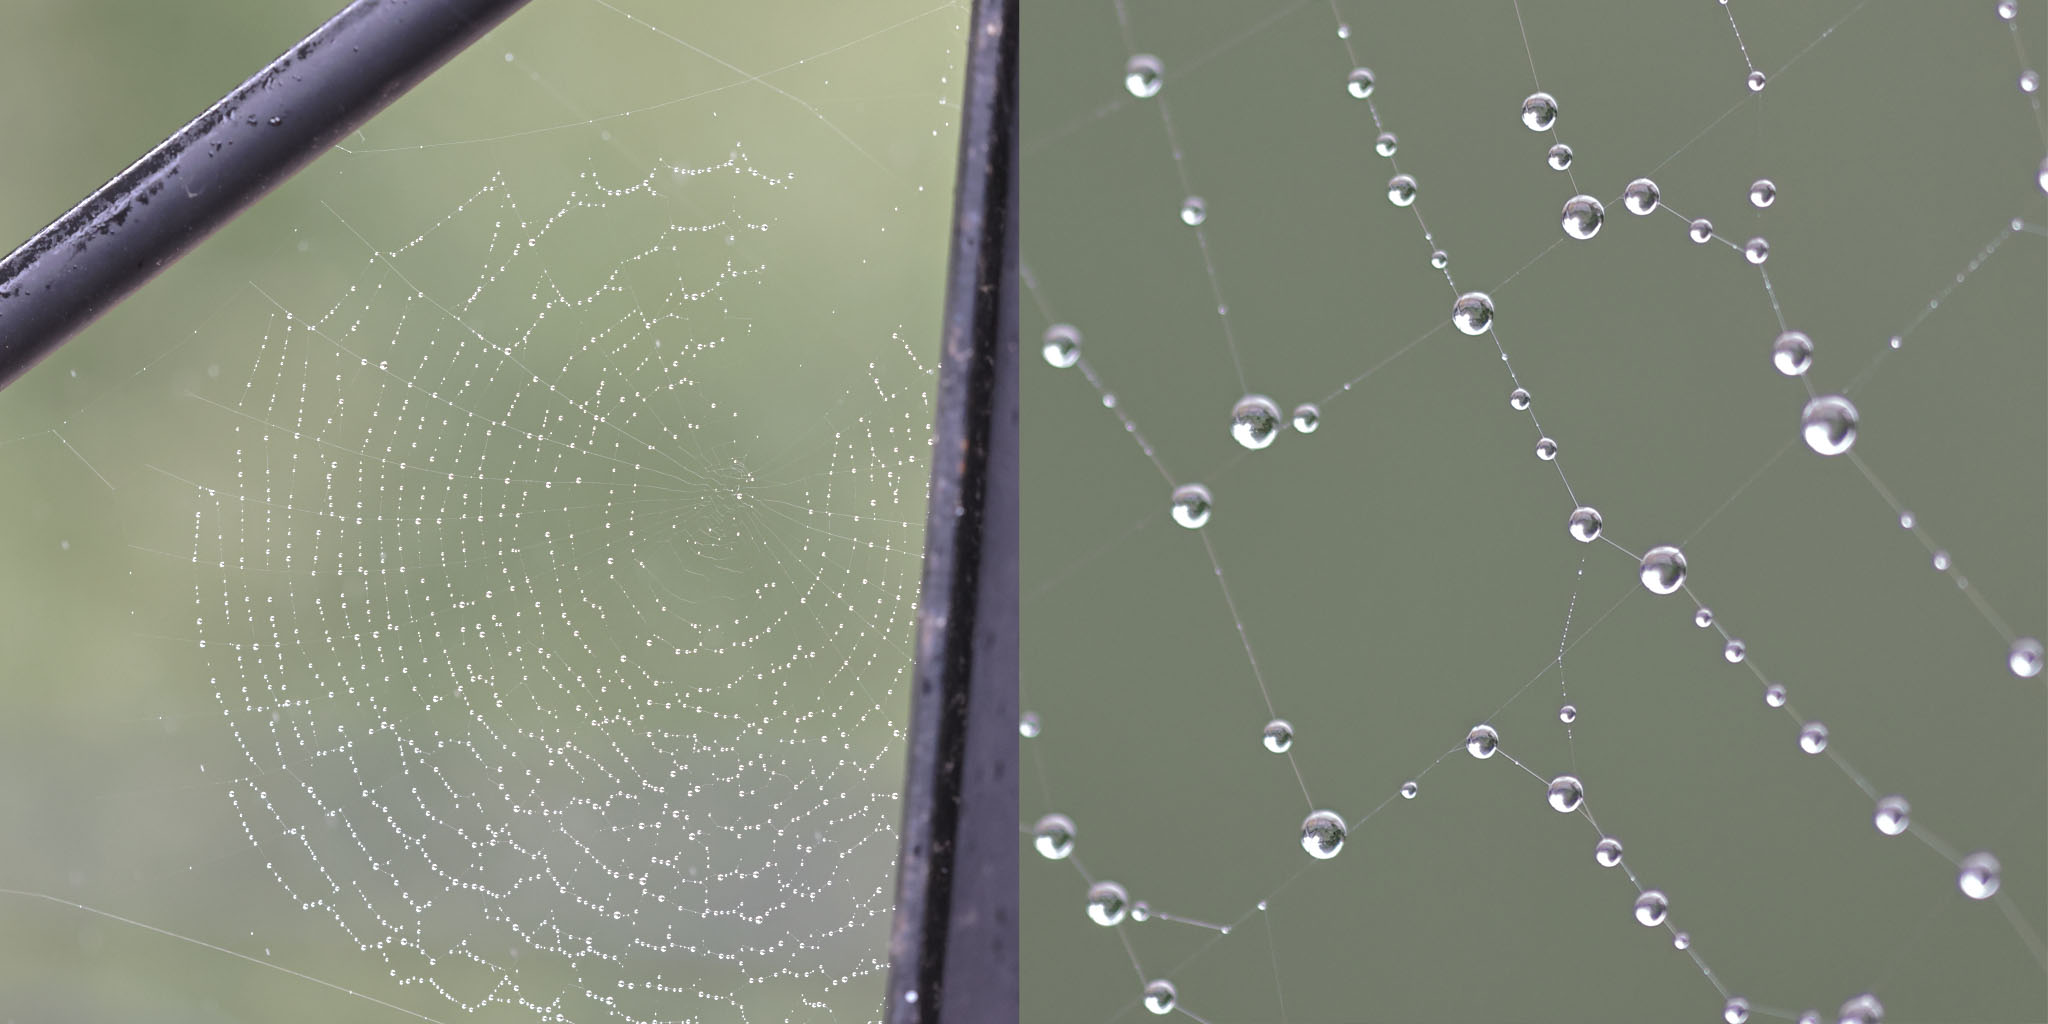 Spiderweb with rain drops.